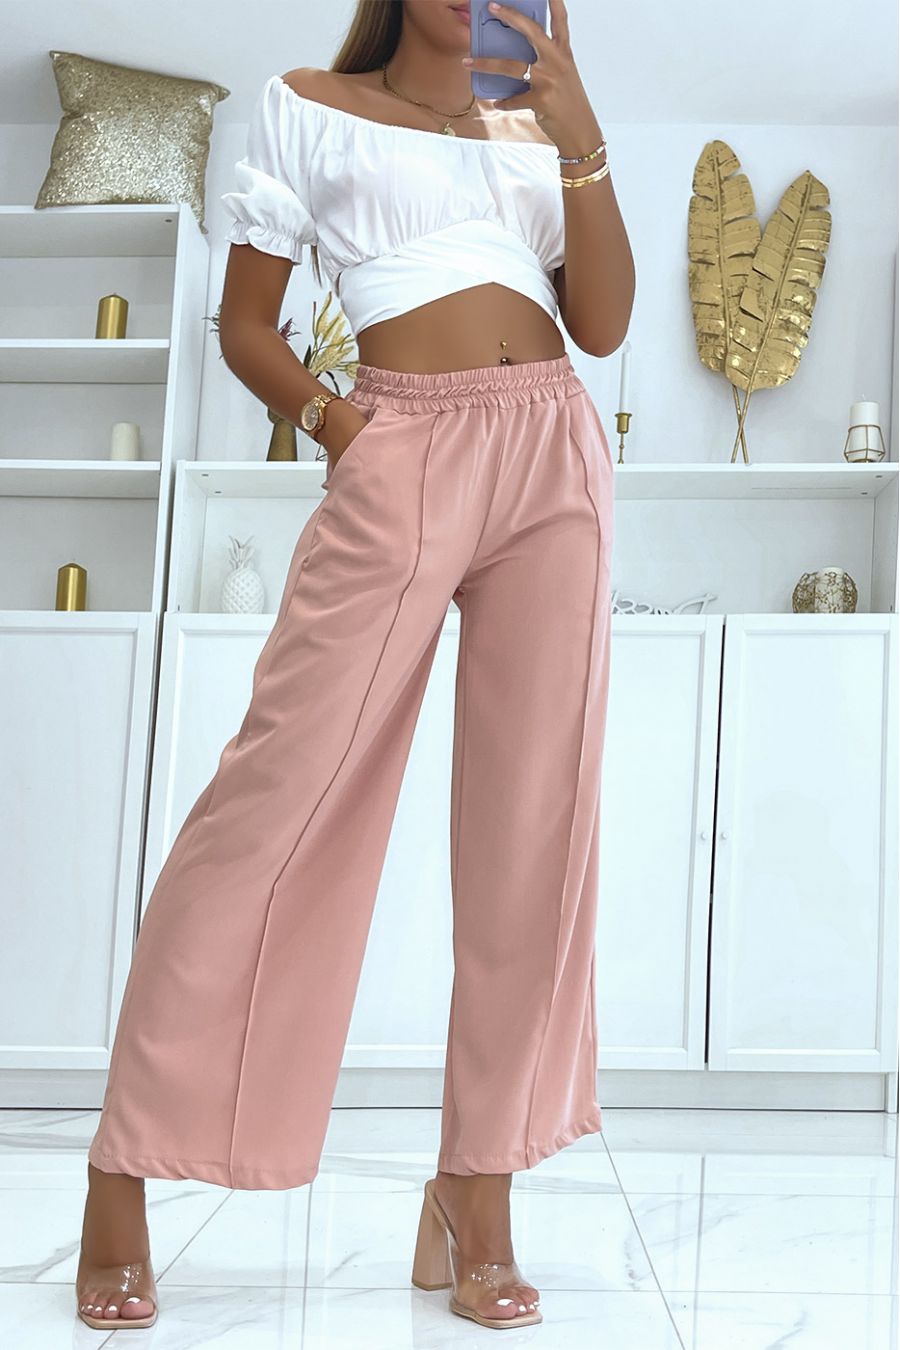 pants Light and comfortable pink palazzo pants